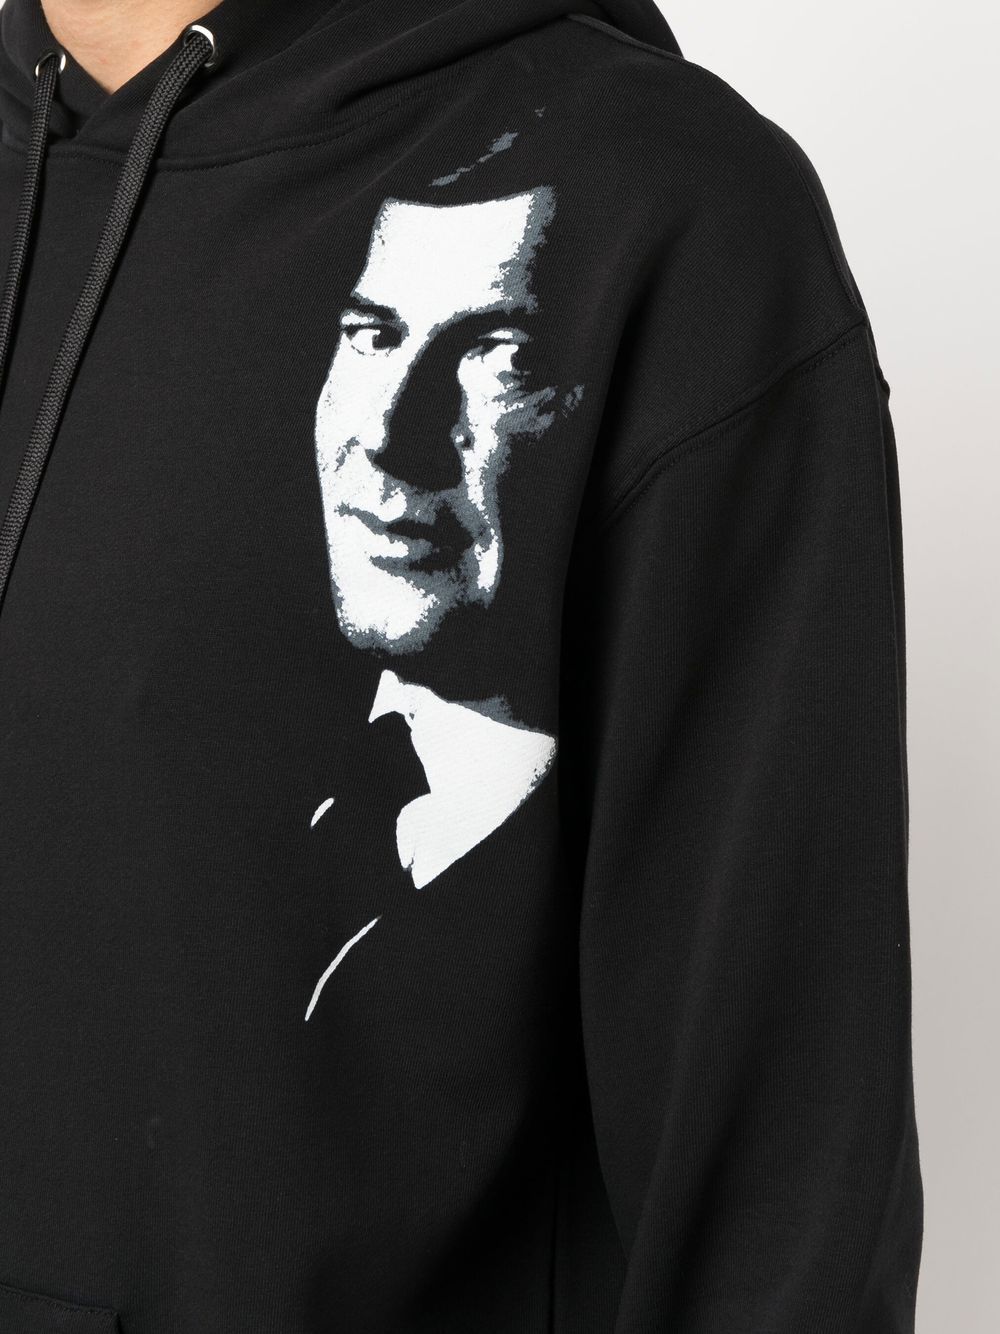 James Bond hoodie